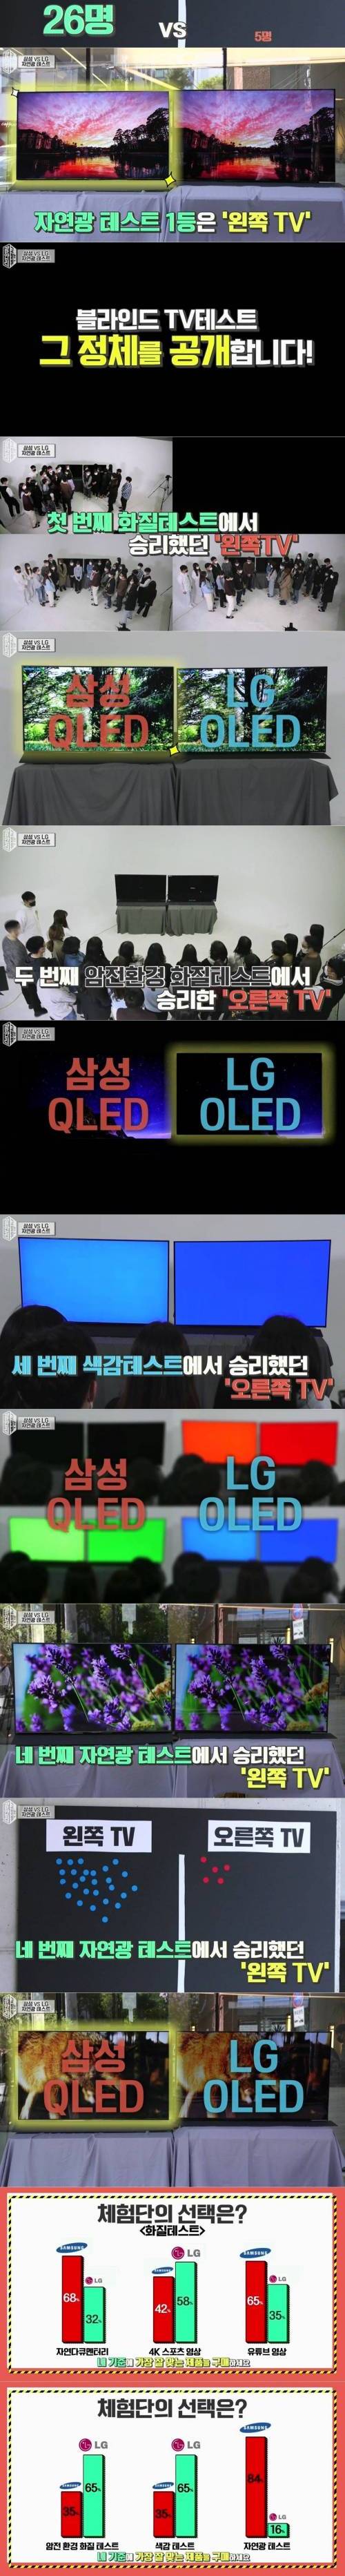 [스압] 삼성 vs 엘지 tv 테스트.jpg